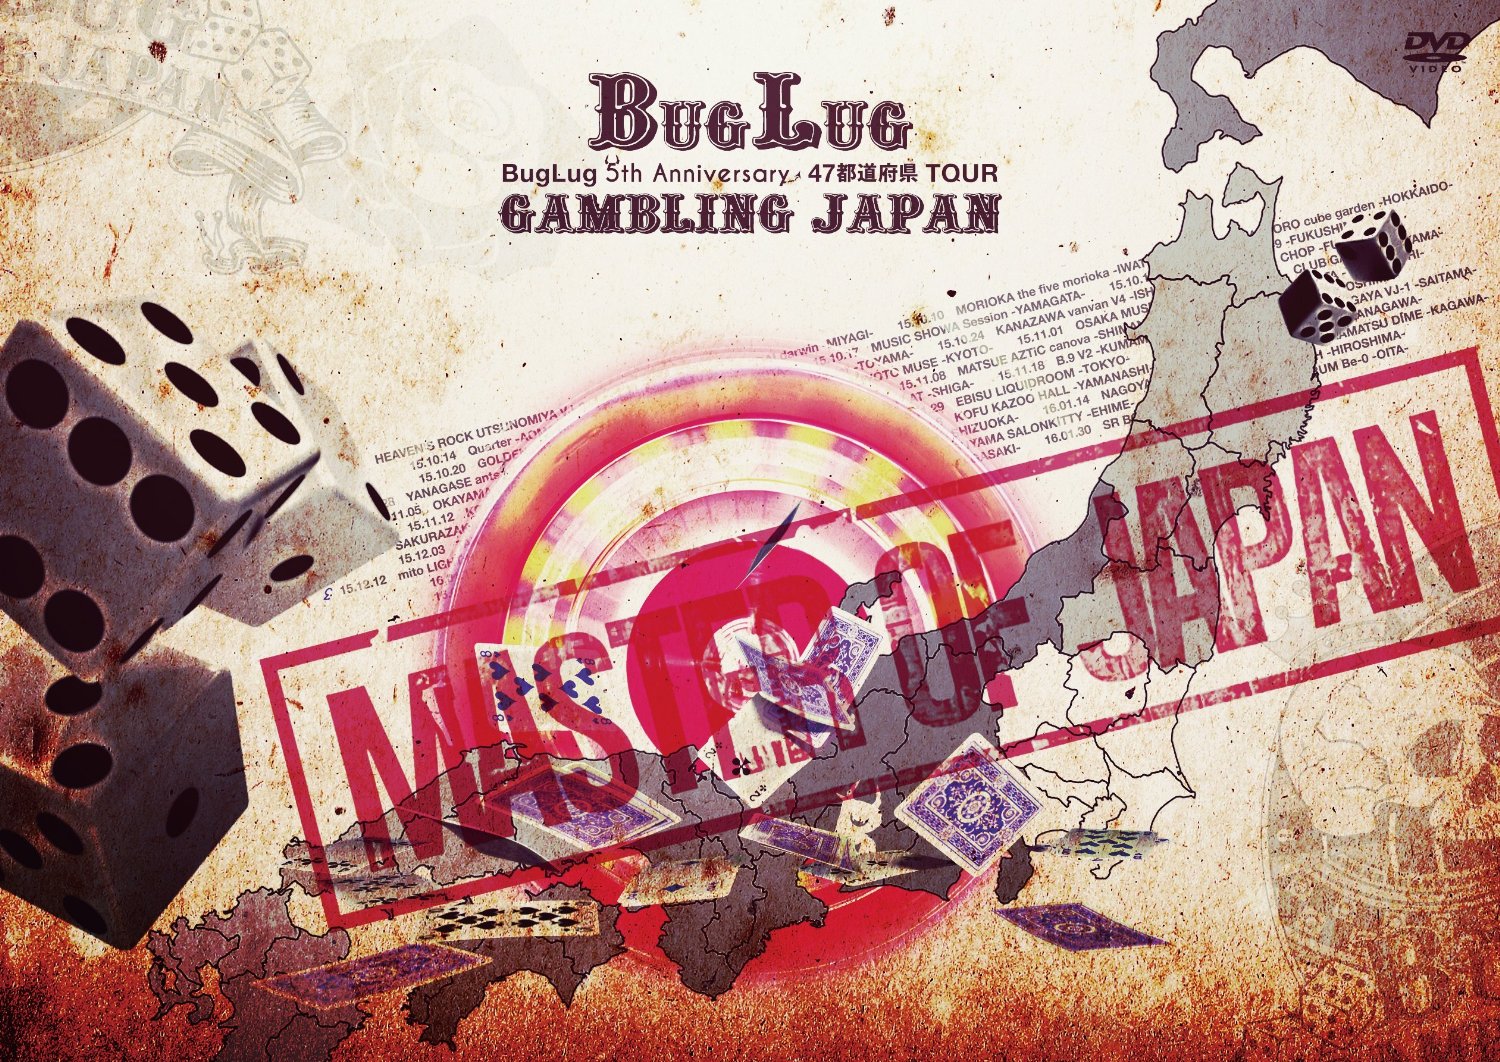 バグラグ の DVD 47都道府県TOUR「GAMBLING JAPAN」ドキュメントムービー「MASTER OF JAPAN」